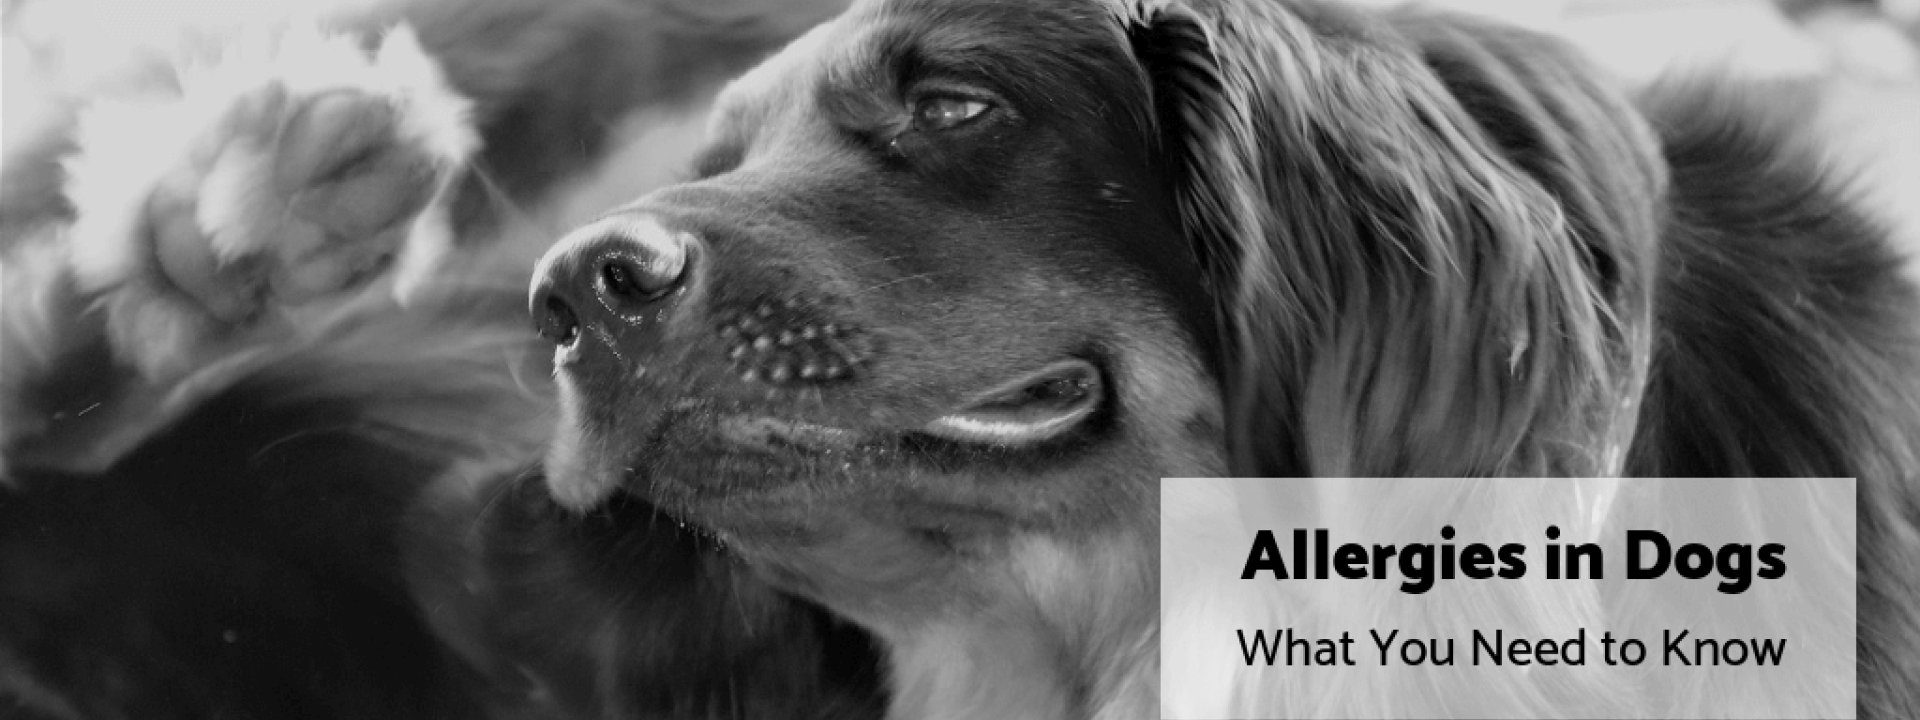 Dog-allergies-blog-header.png